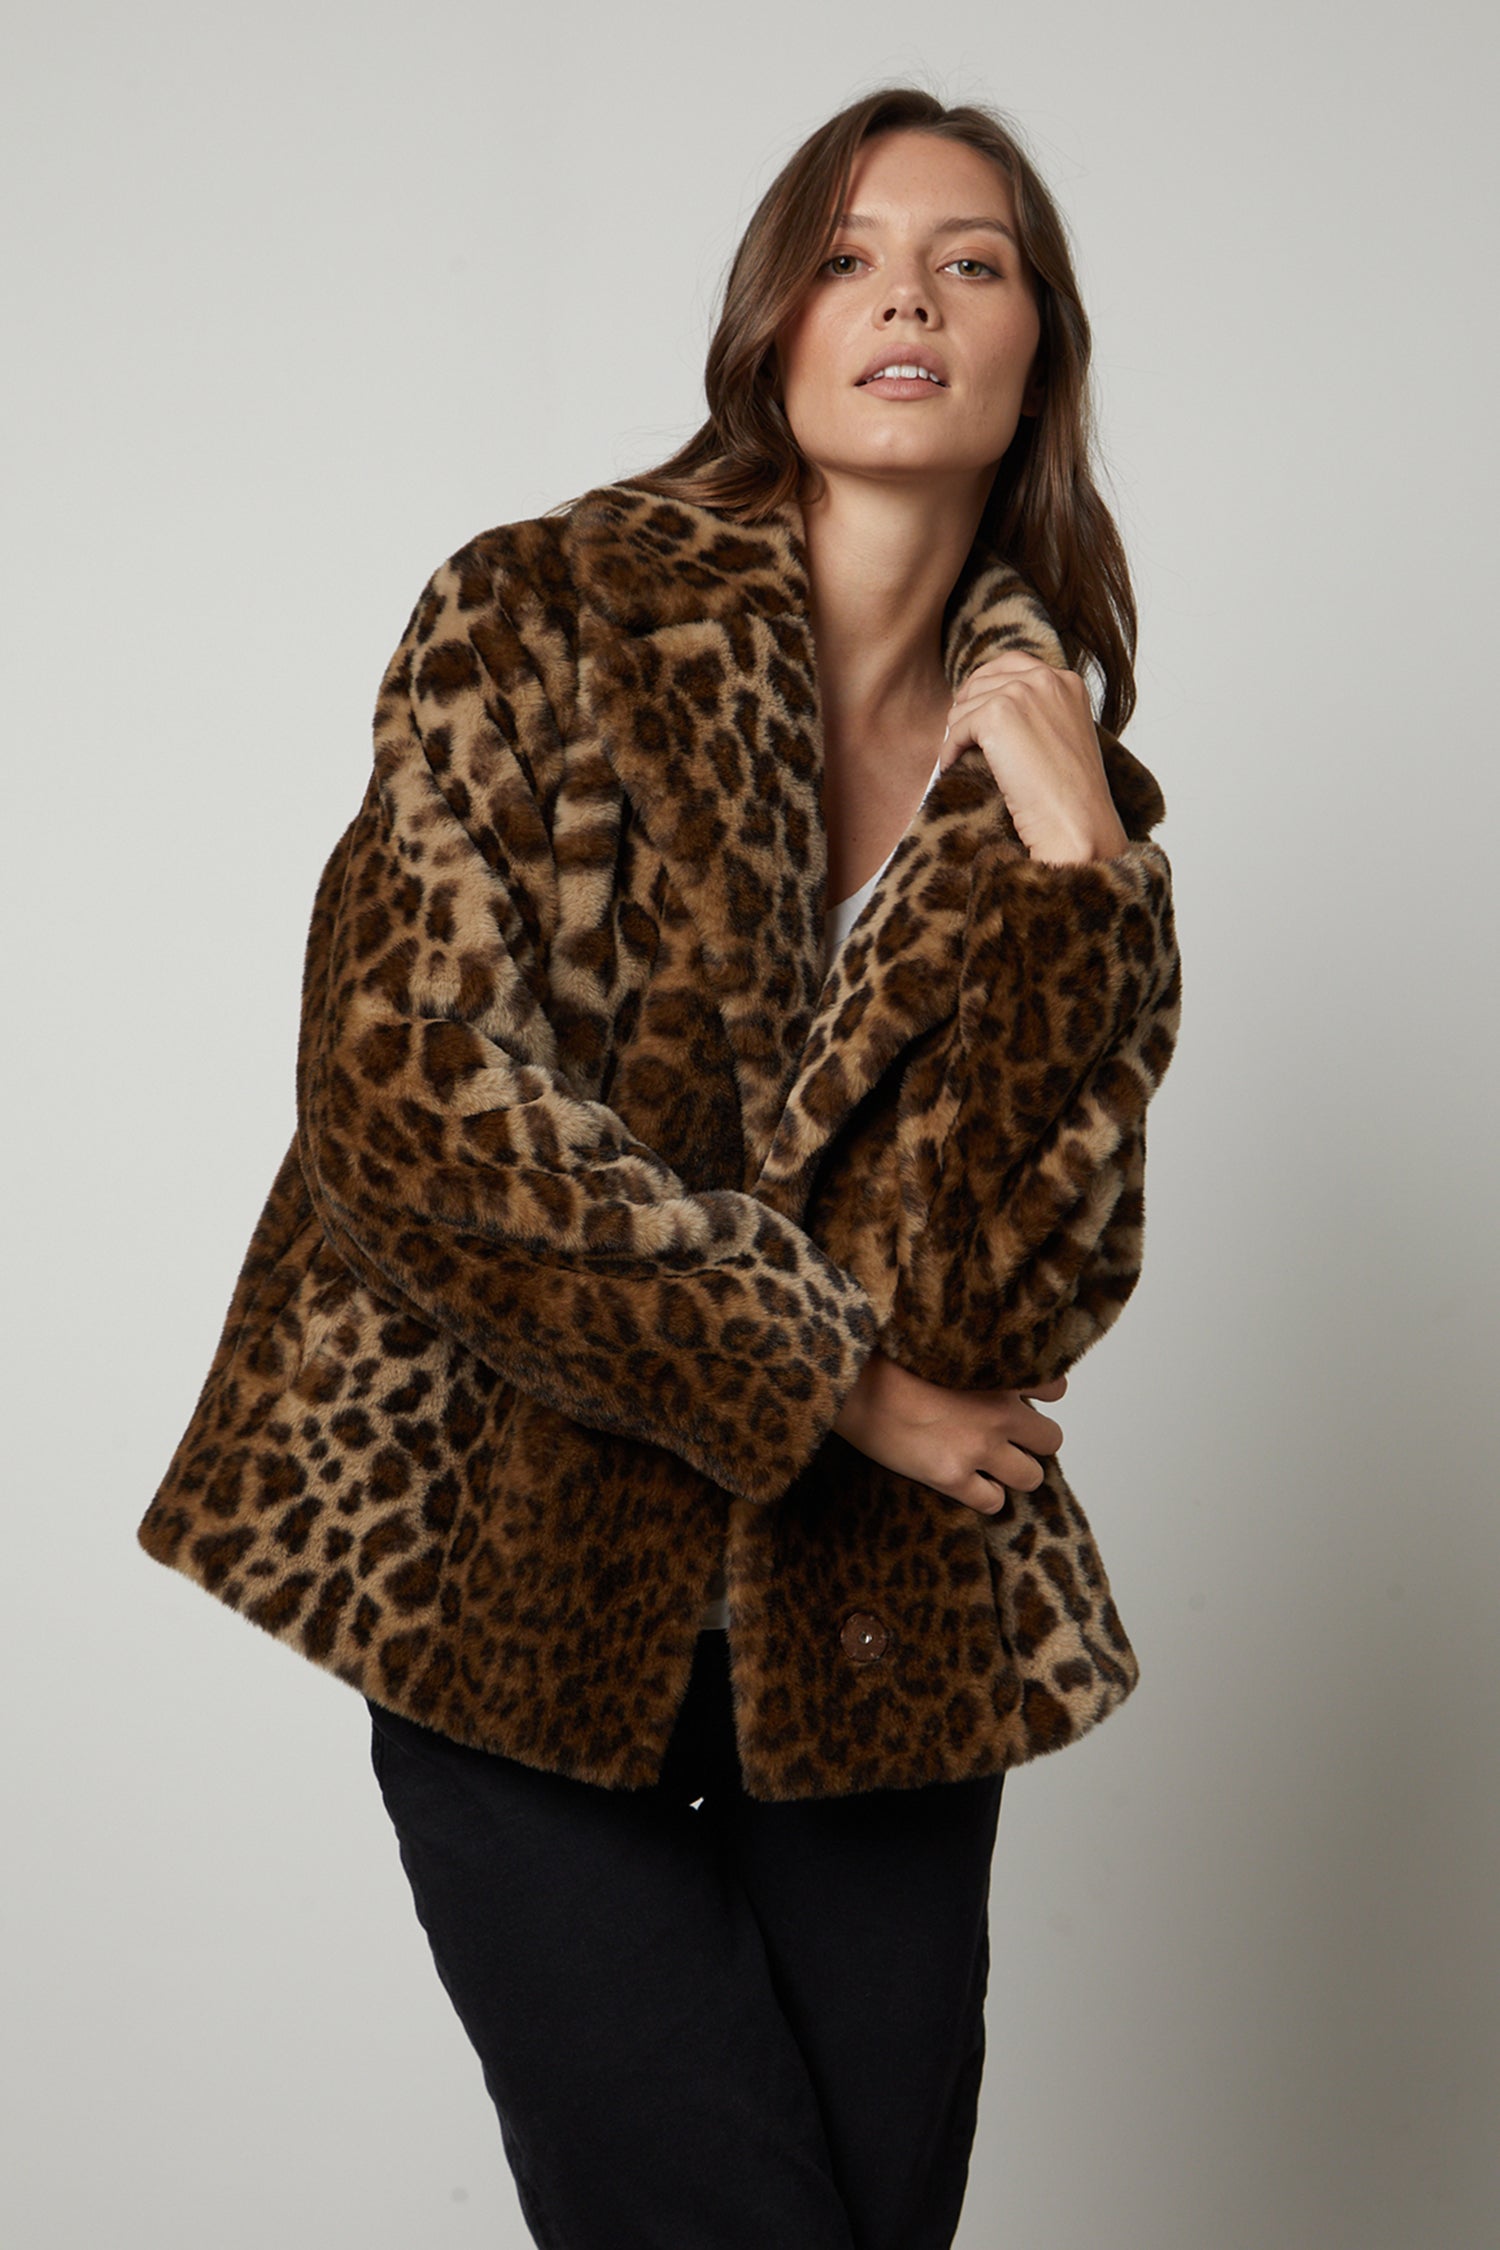 Shop Cinq à Sept Tenley Faux-Fur Embellished Coat